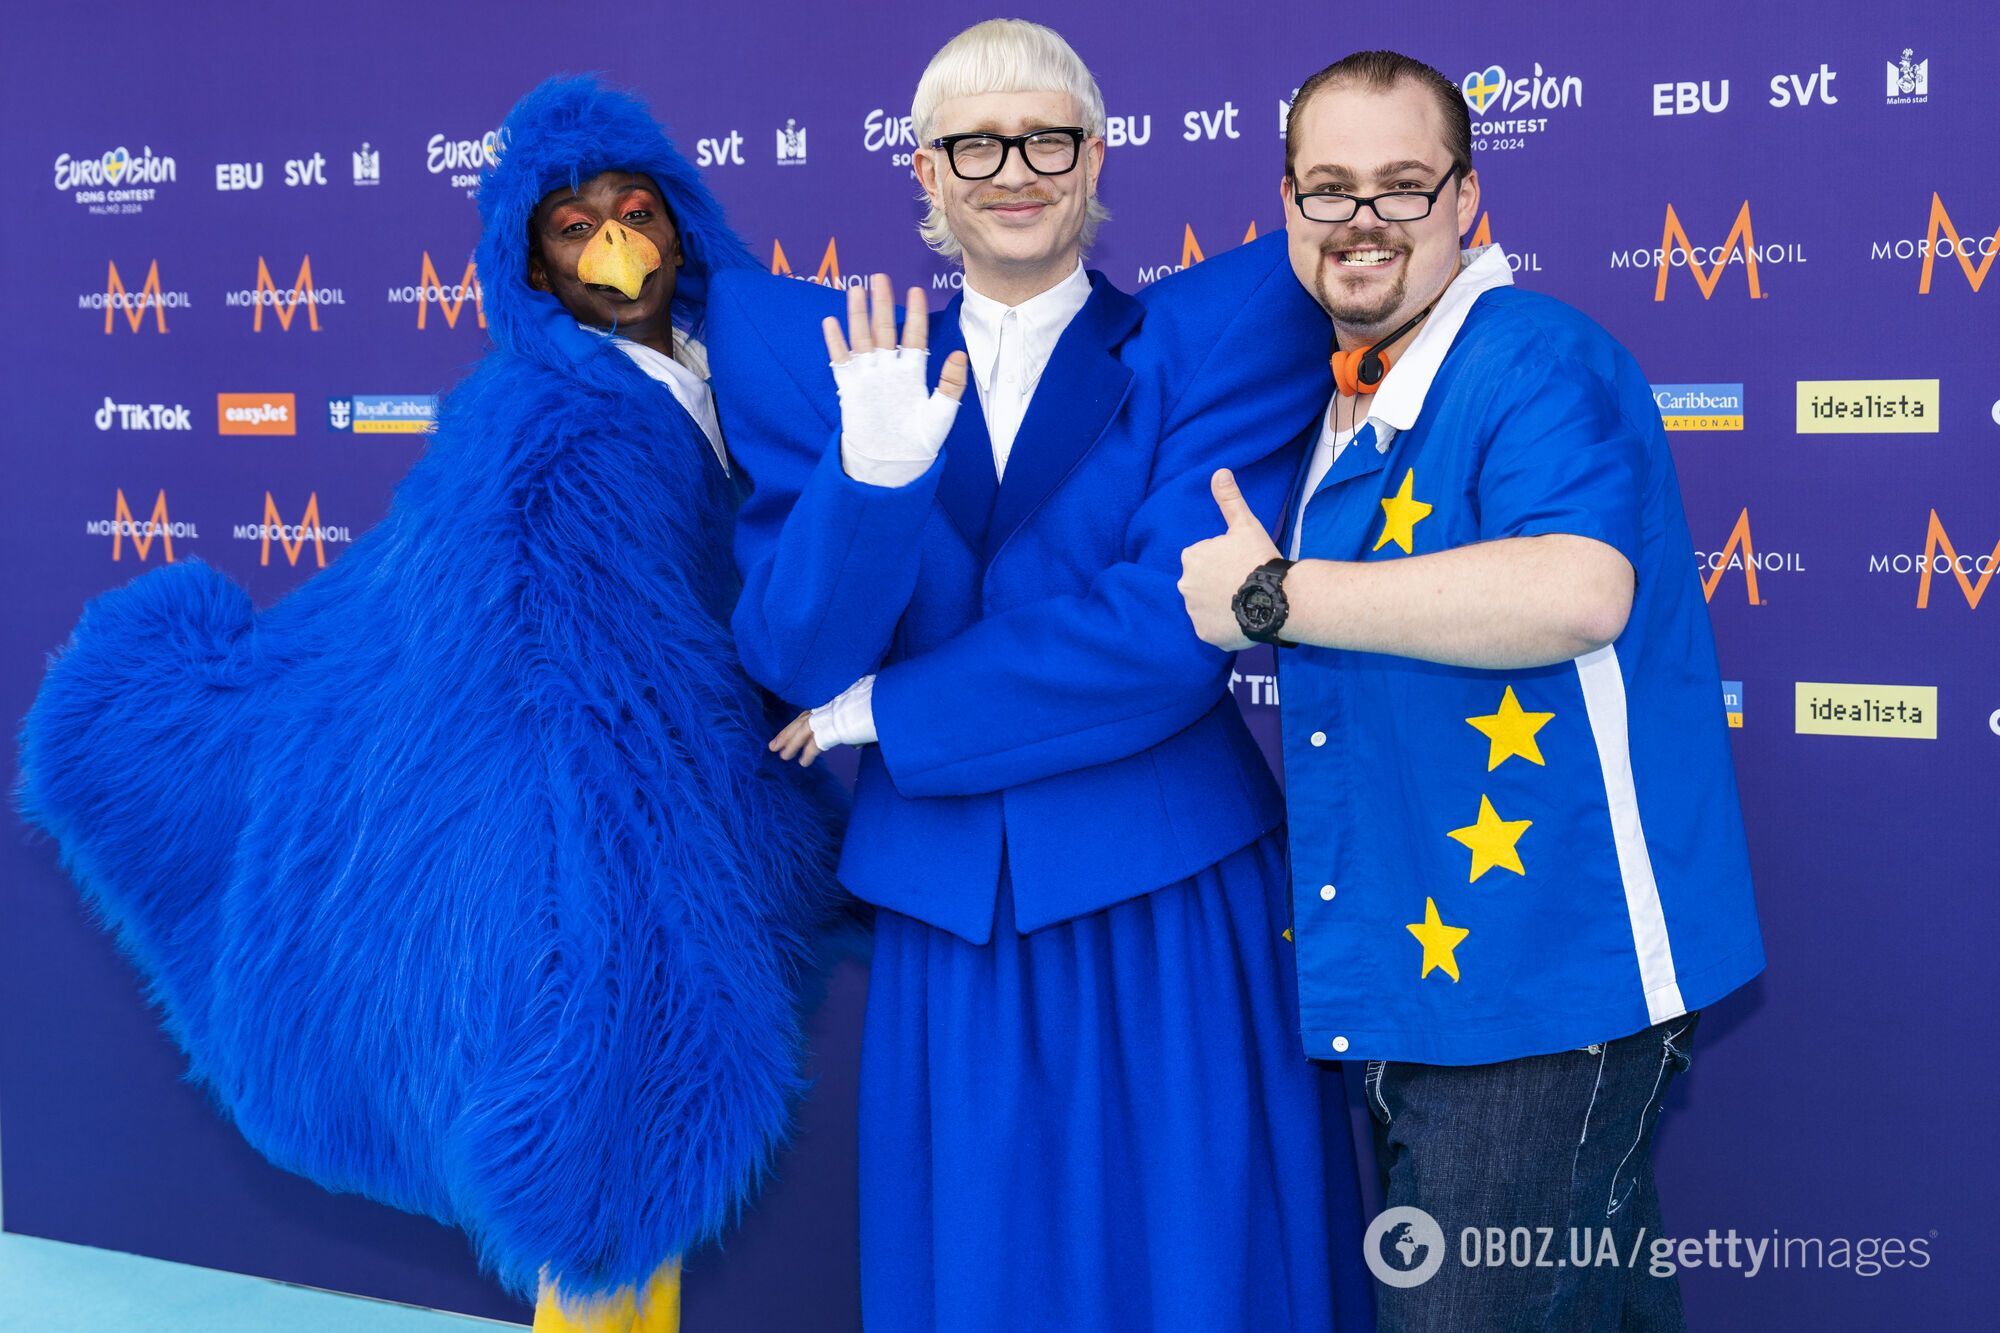 Joost Klein из Нидерландов хитом Europapa довел фанатов Евровидения 2024 года до безумия: публика не могла сдержать эмоций. Видео